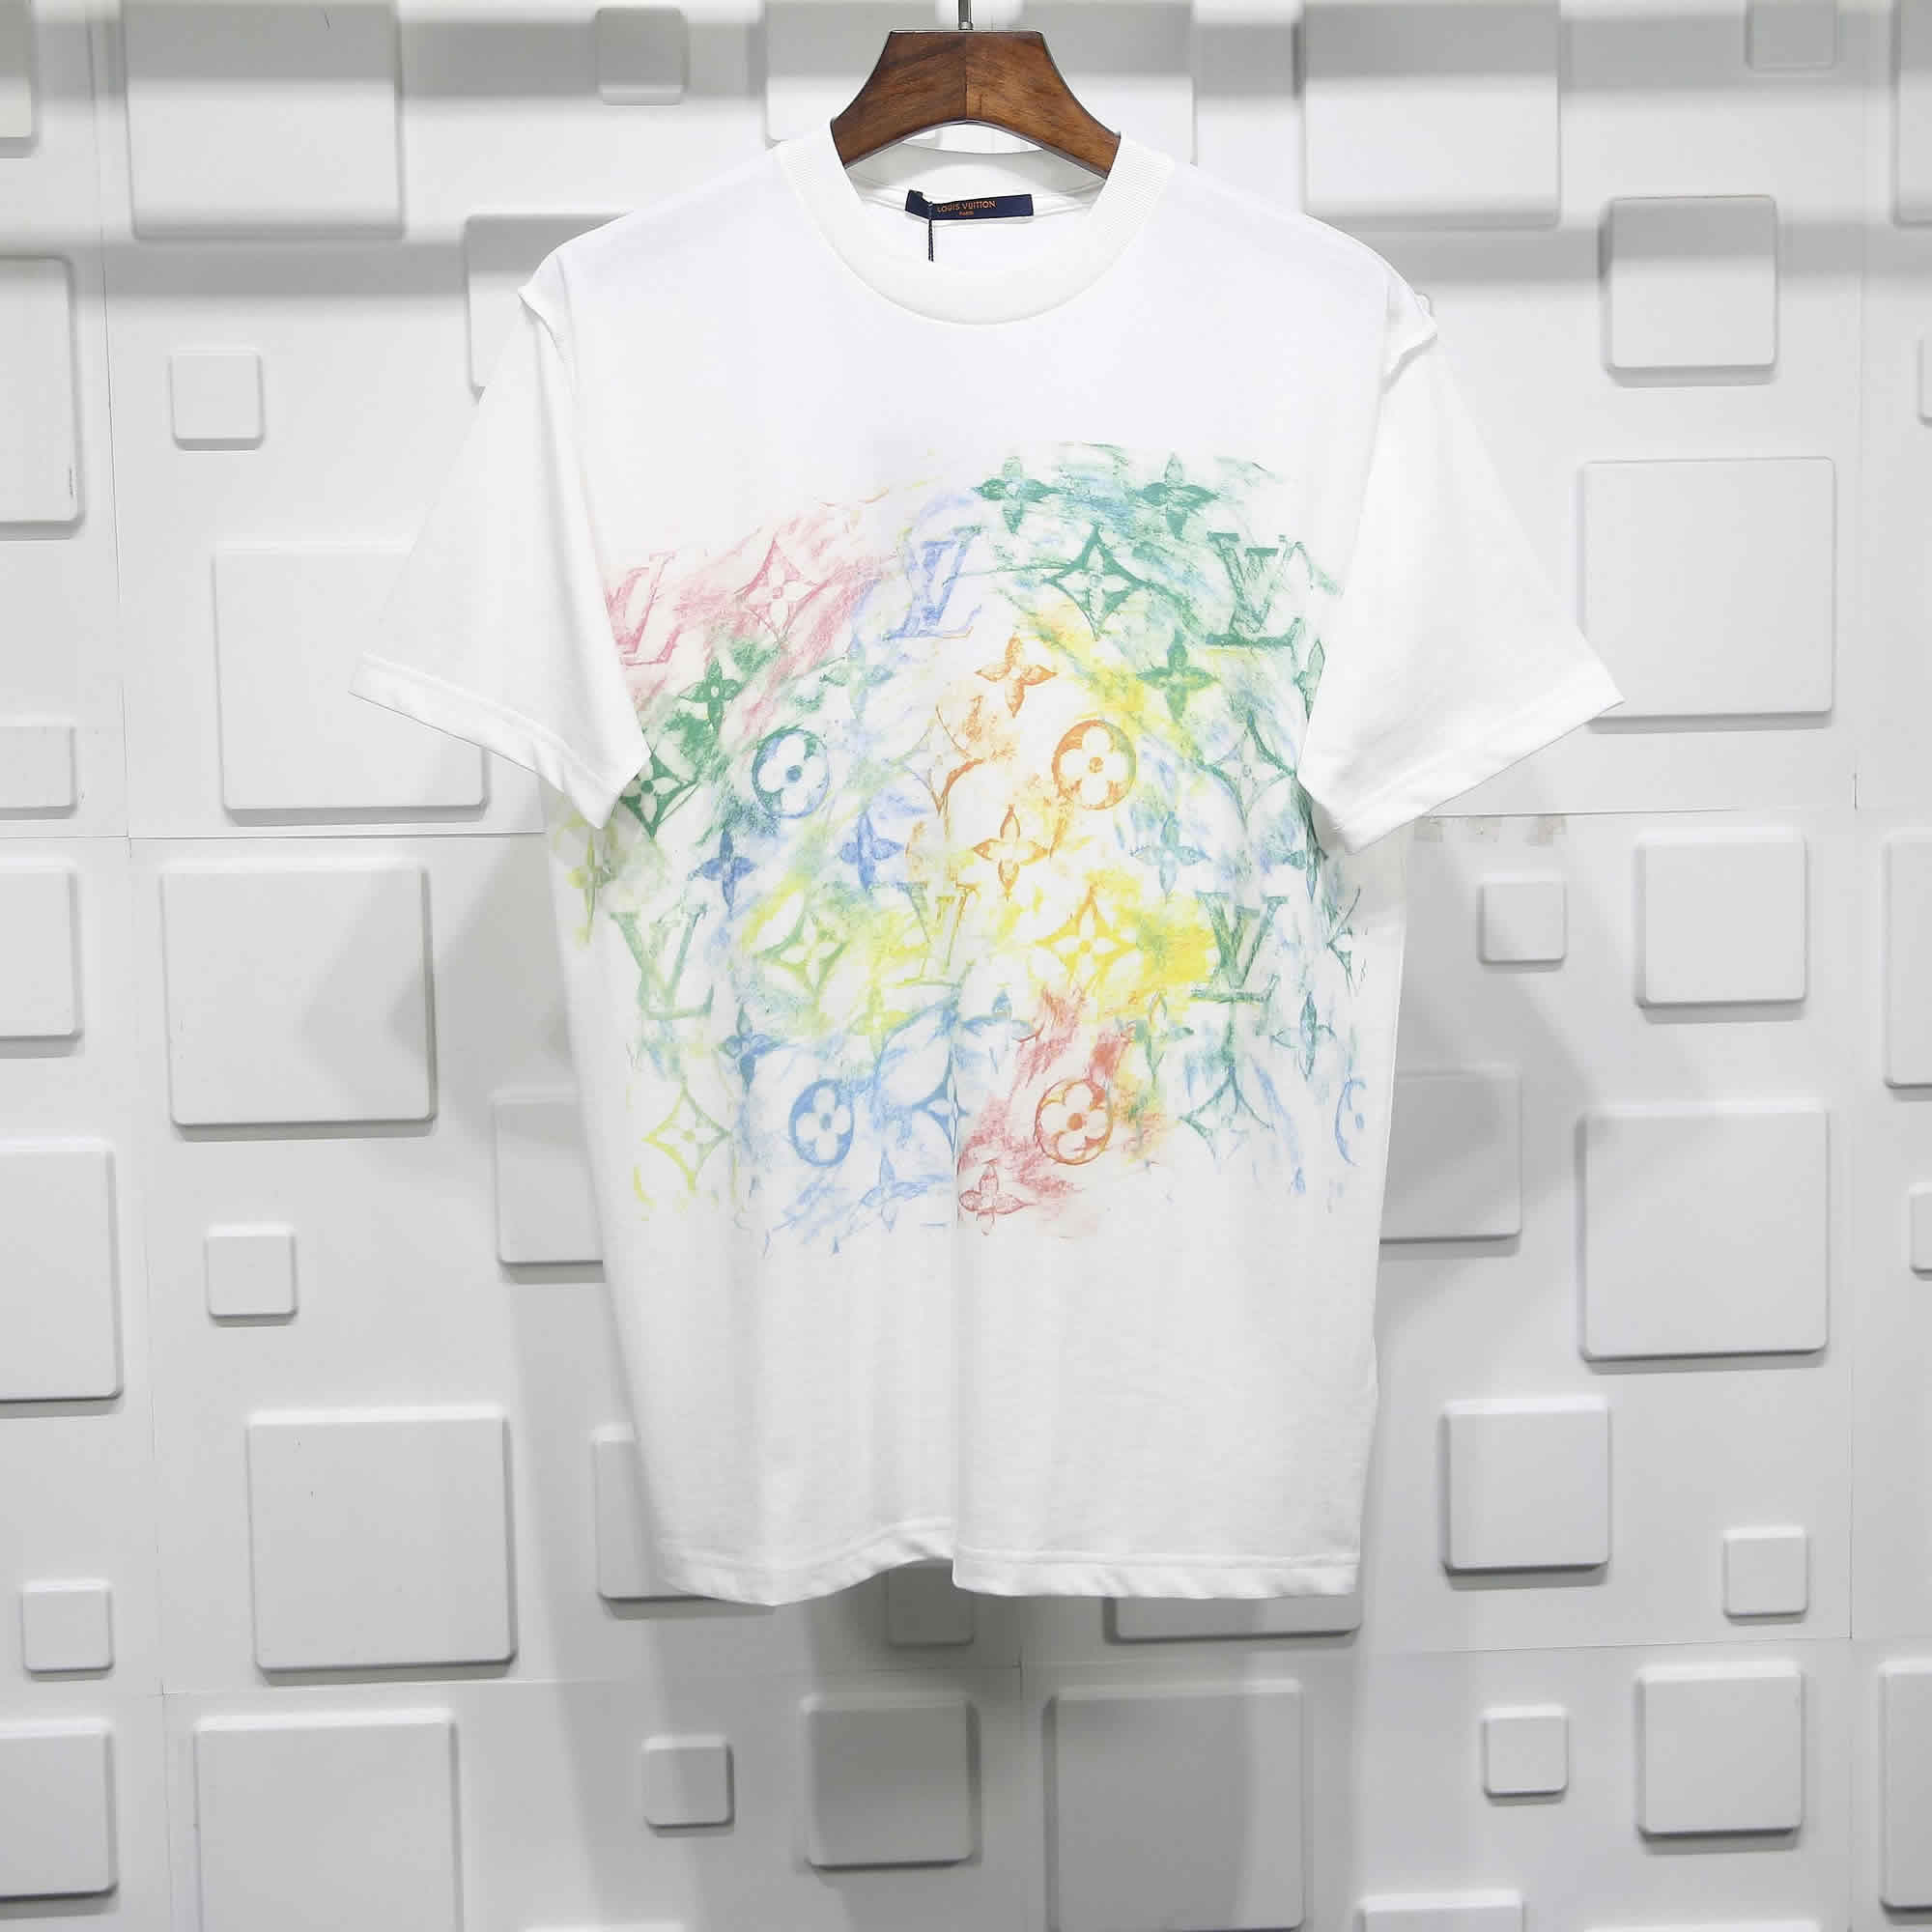 Louis Vuitton Crayon Doodle T Shirt 1 - kickbulk.cc